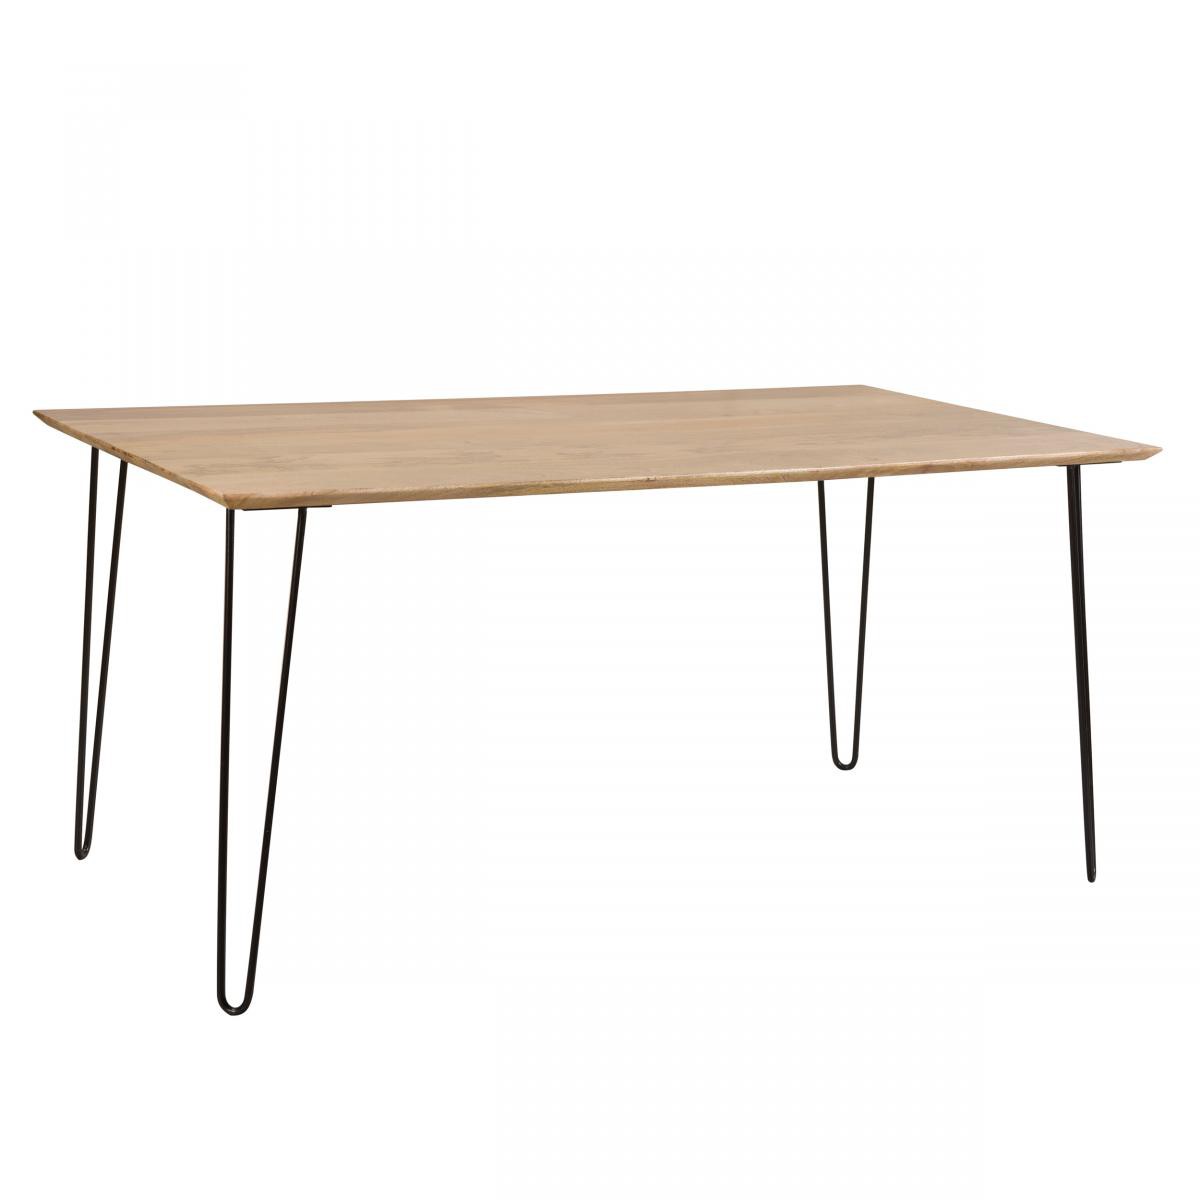 Rendez Vous Deco - Table rectangulaire Kiwi 160 cm en bois - Tables à manger